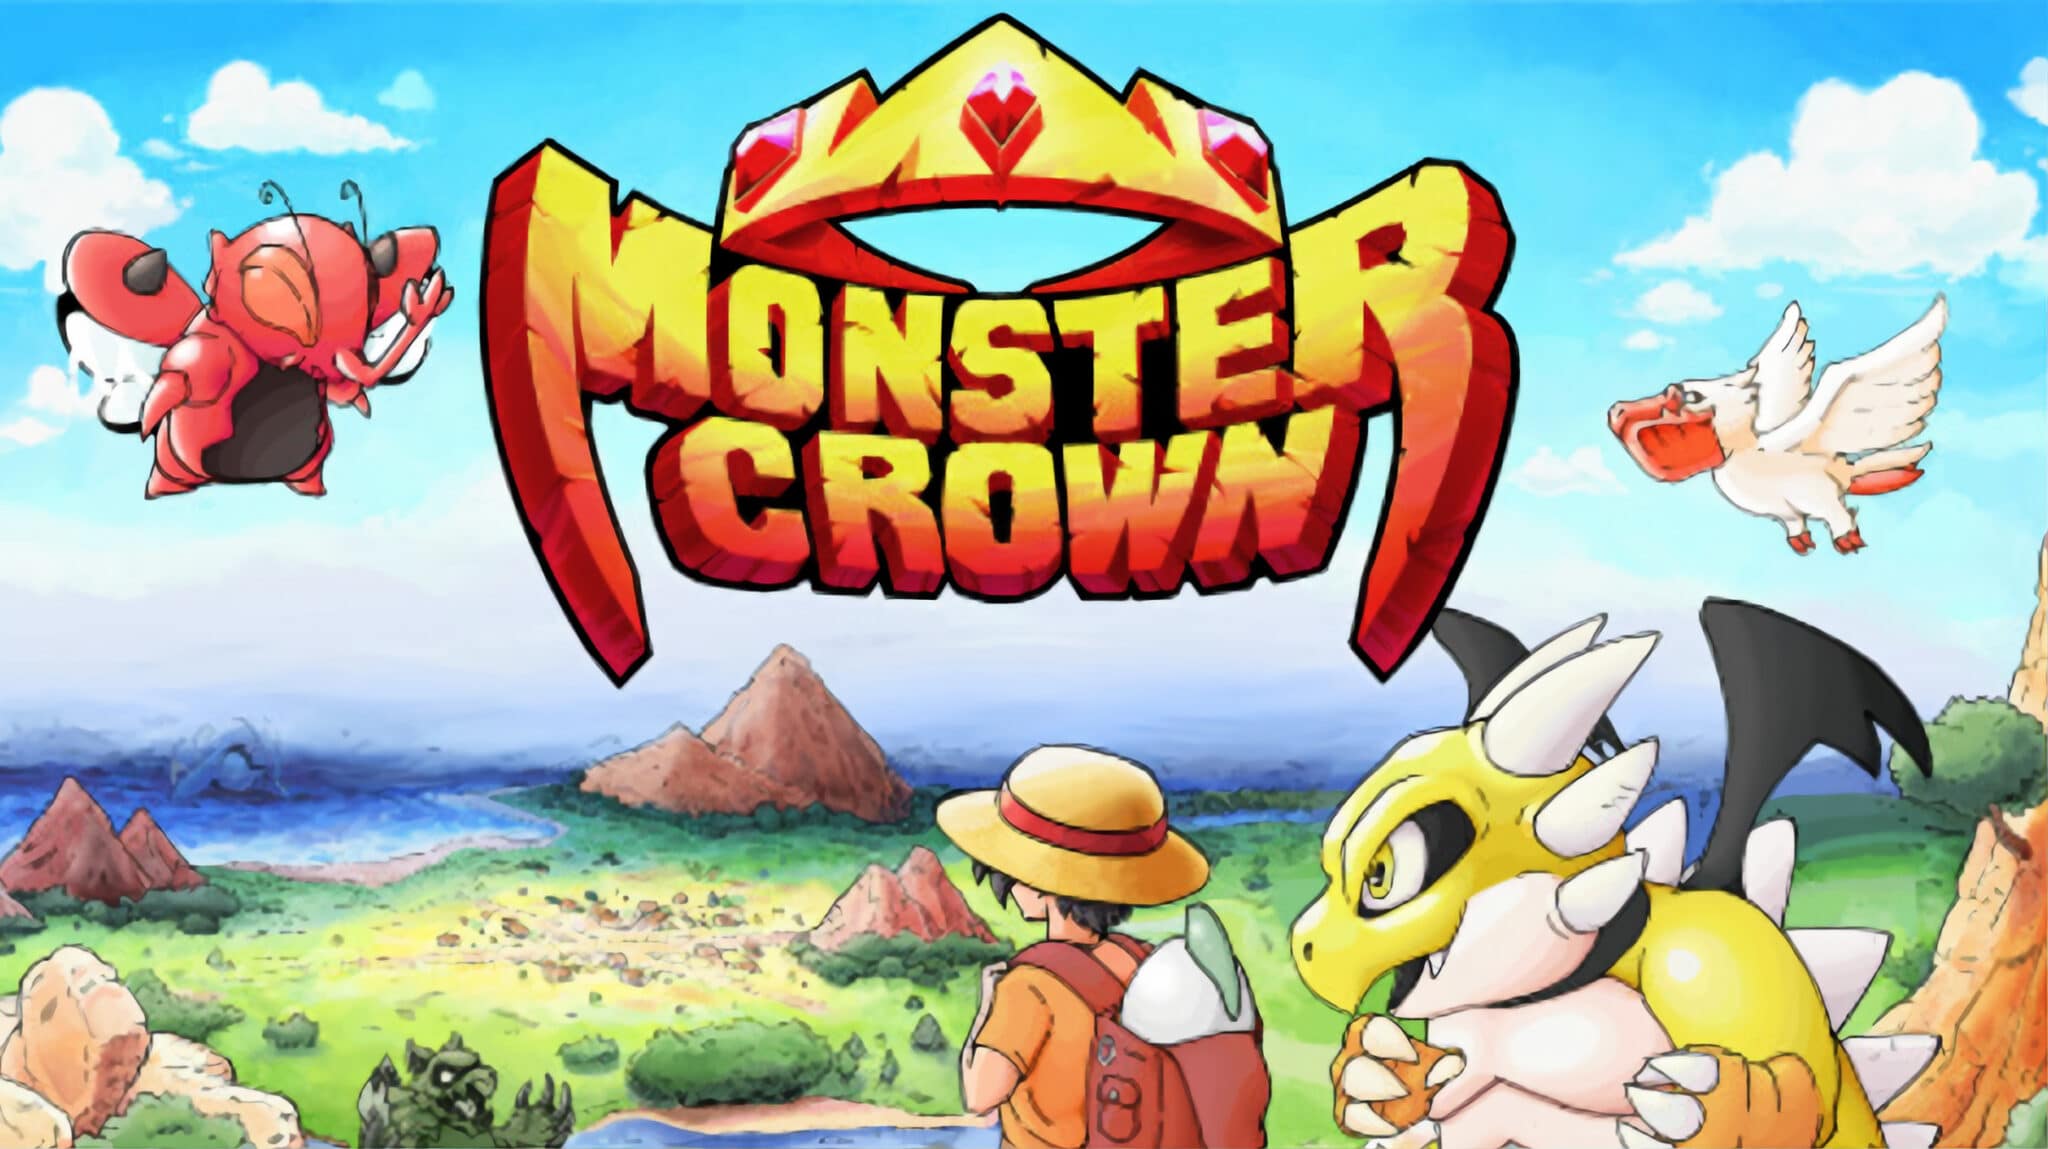 Monster Crown komt 12 Oktober